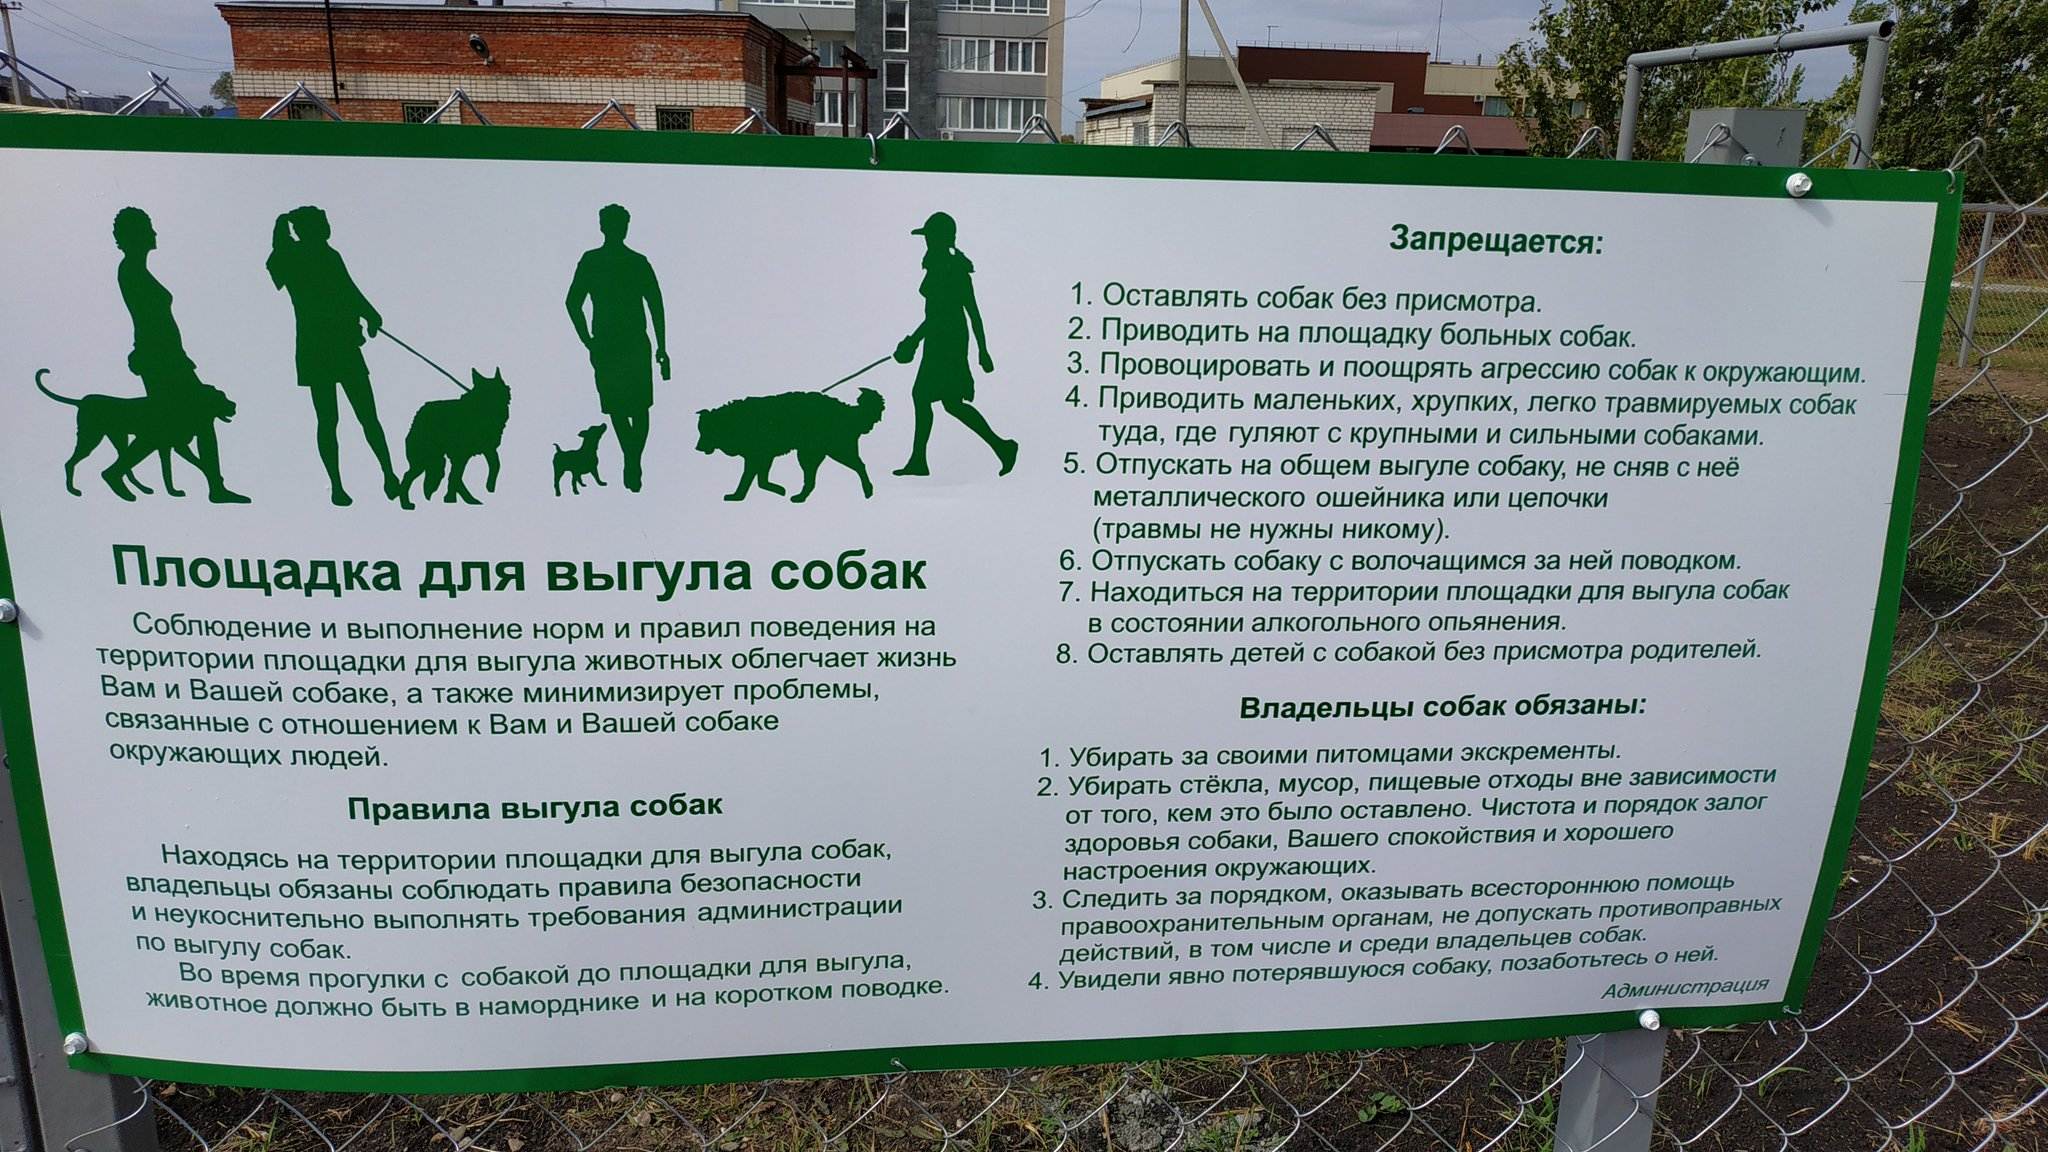 Собака в доме по православию — отношение церкви к собакам